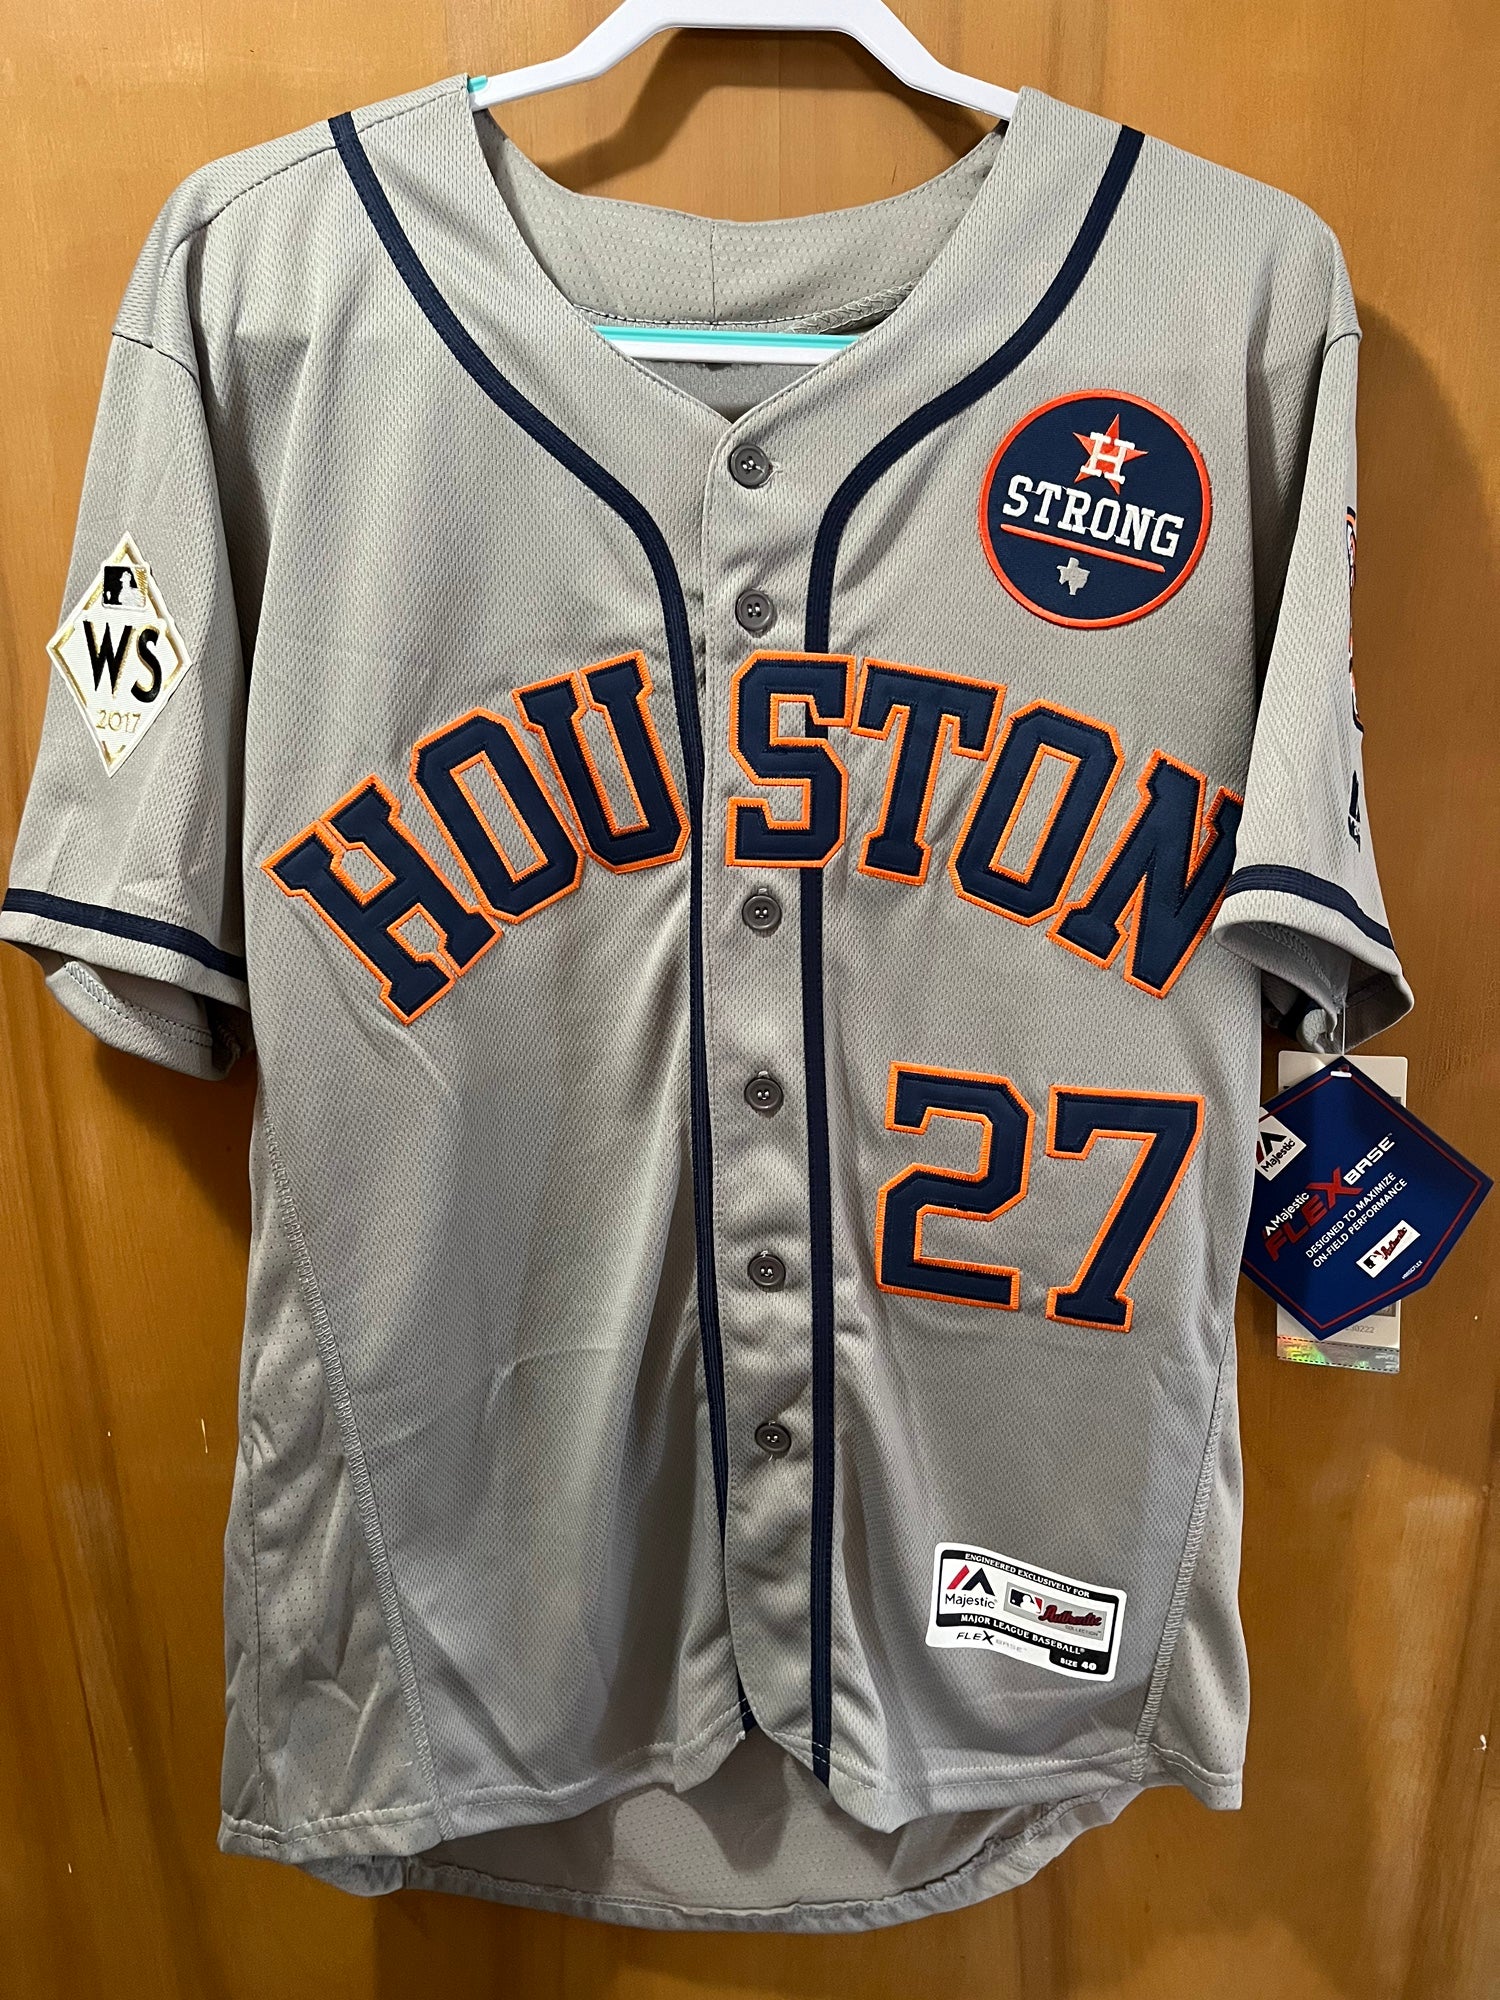 Jose Altuve #27 Houston Astros 2017 WS Jersey Size 40 NWT